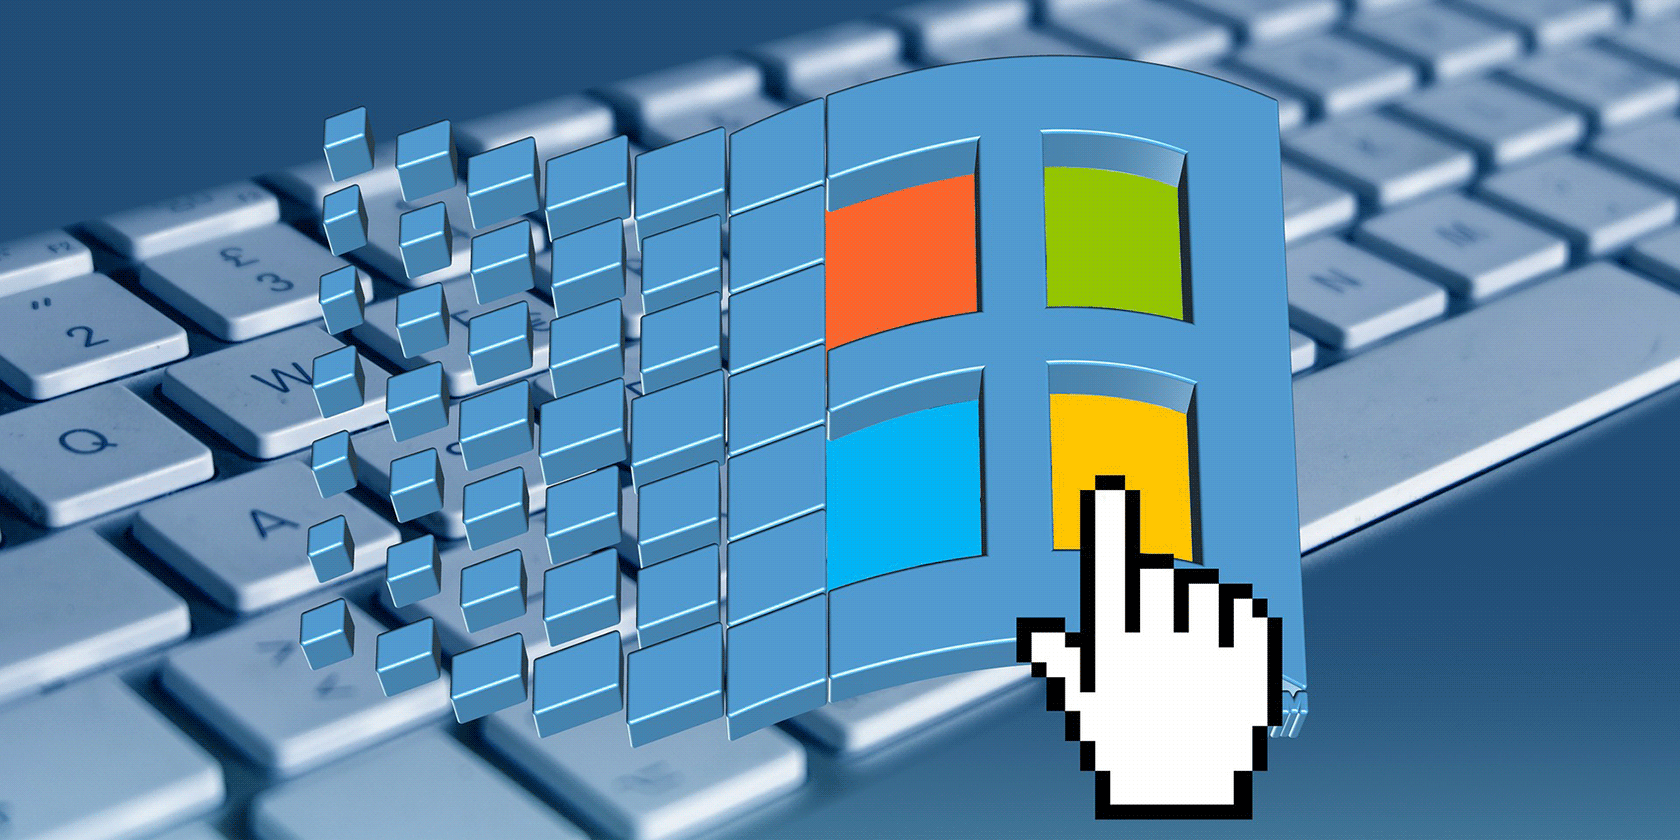 Windows 10 version 1511 - BetaWiki